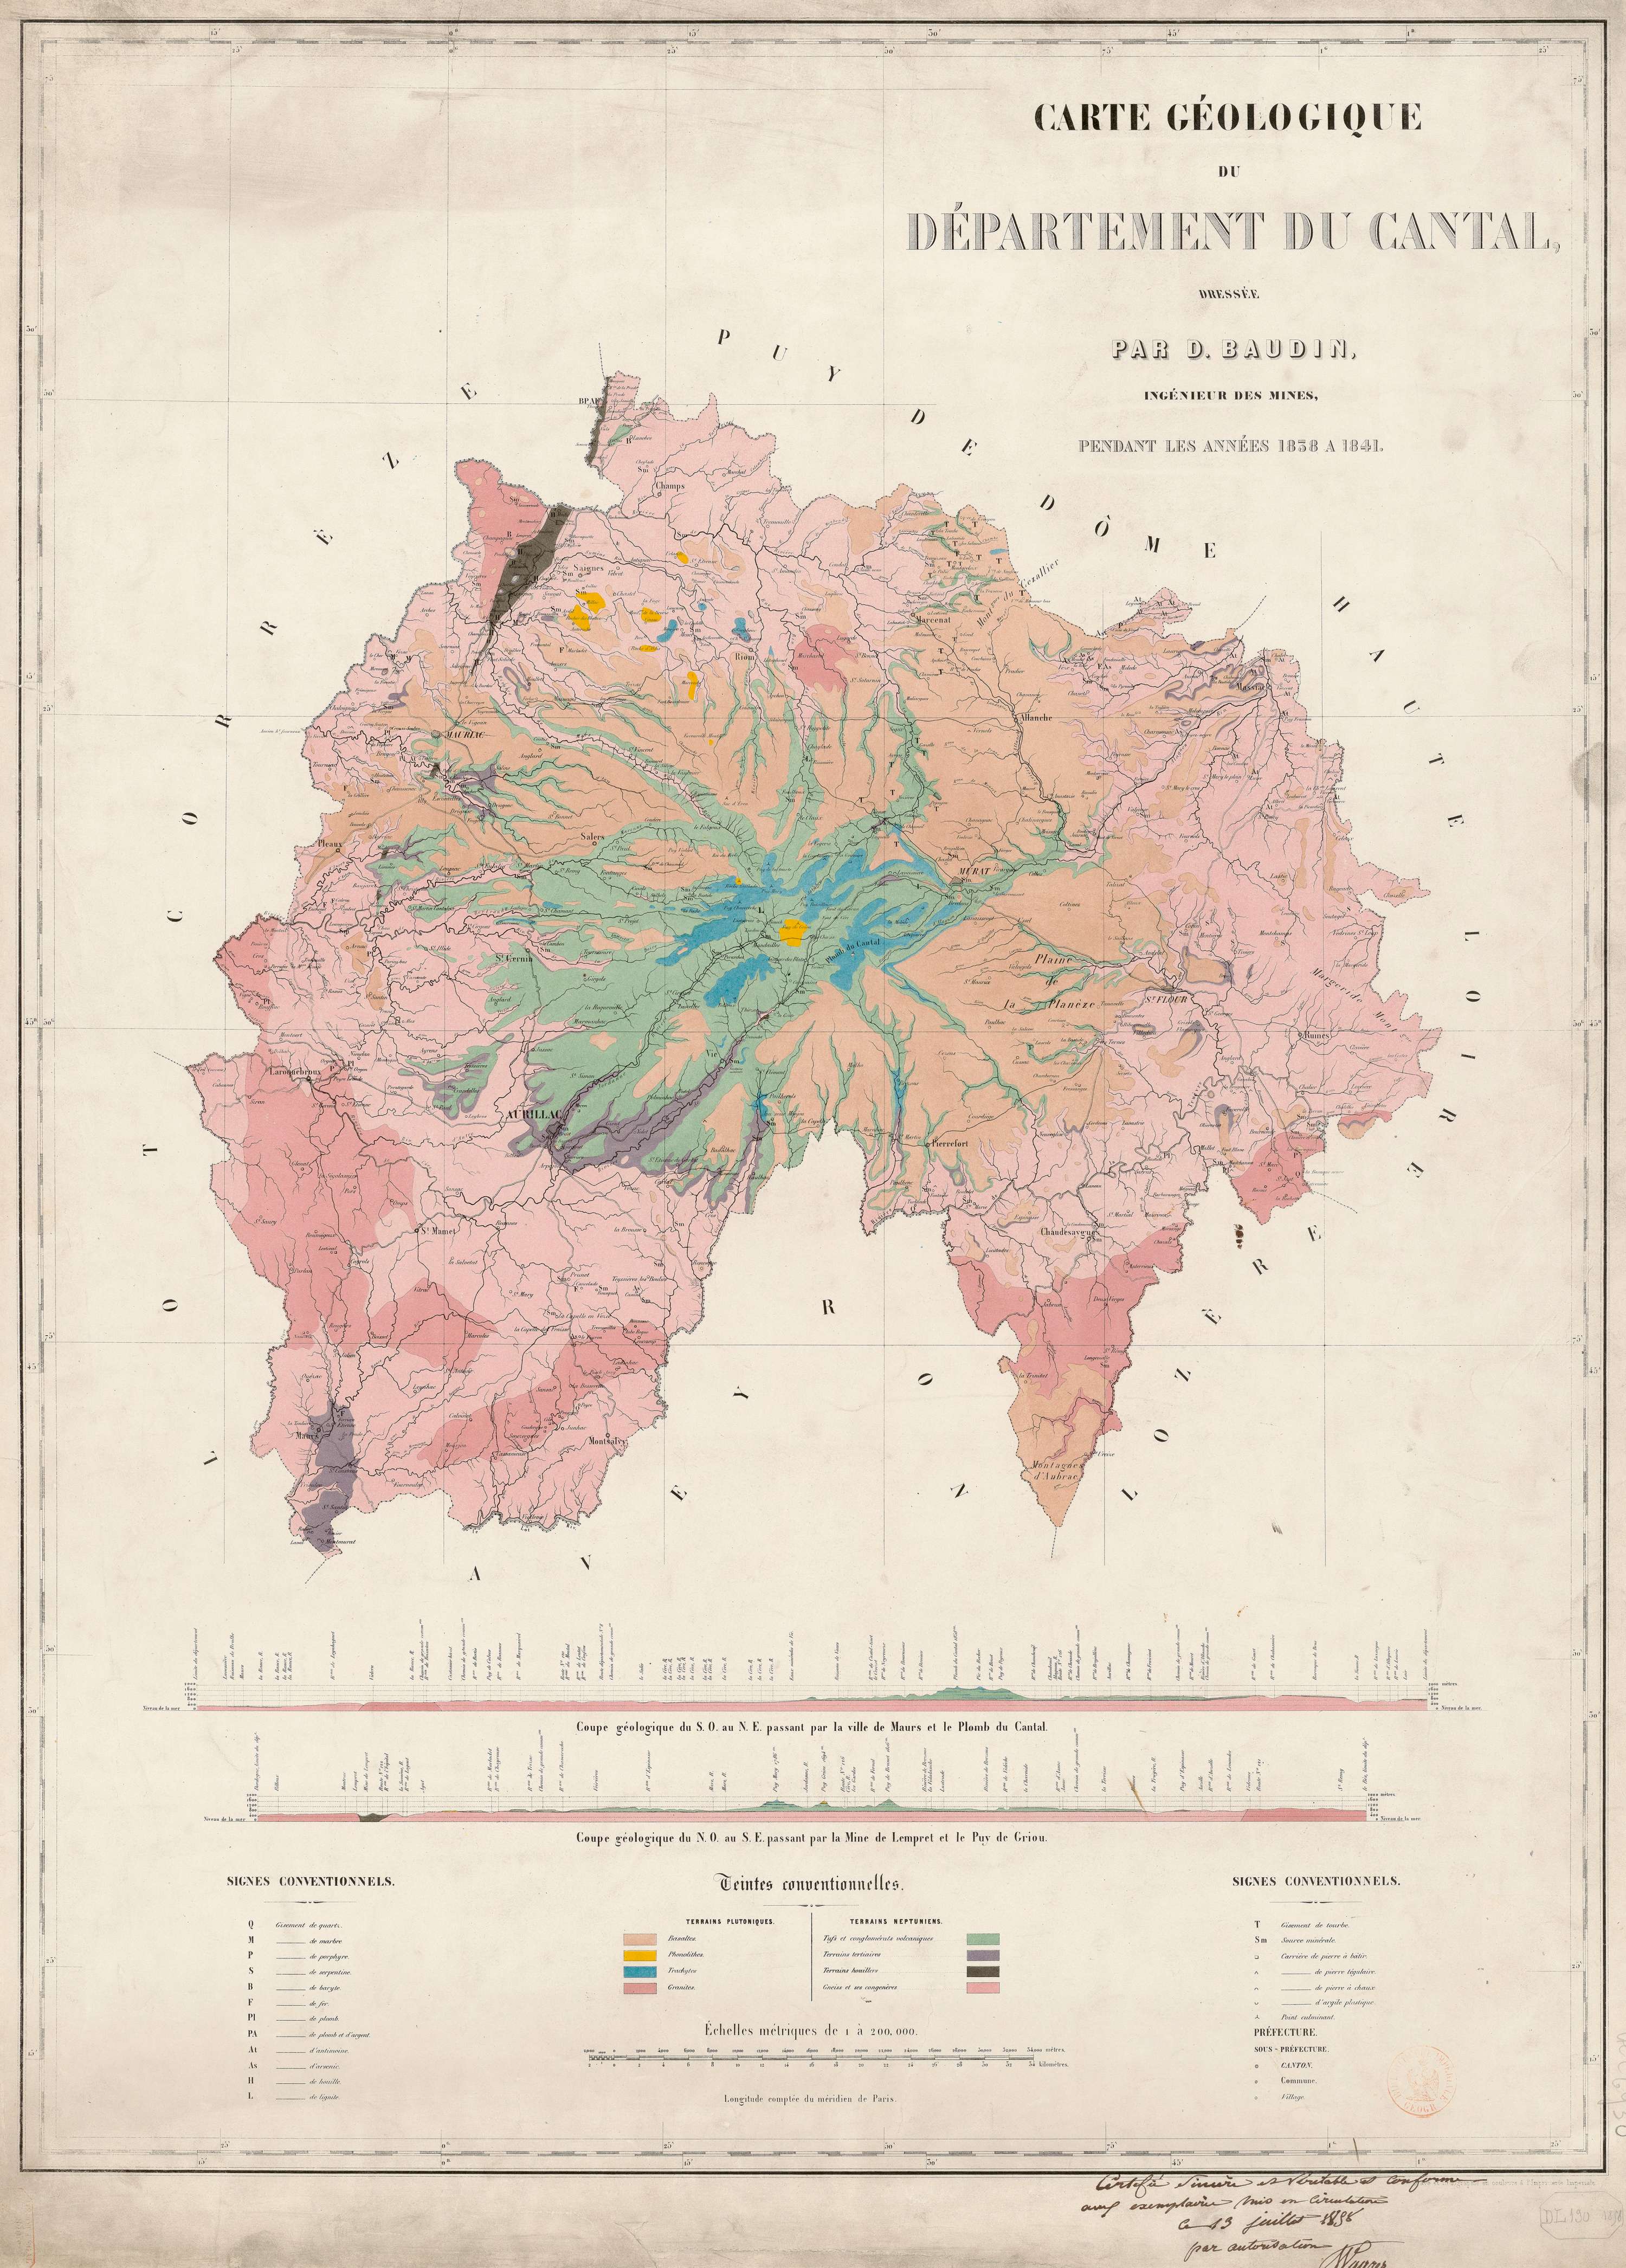 Carte géologique du département du Cantal